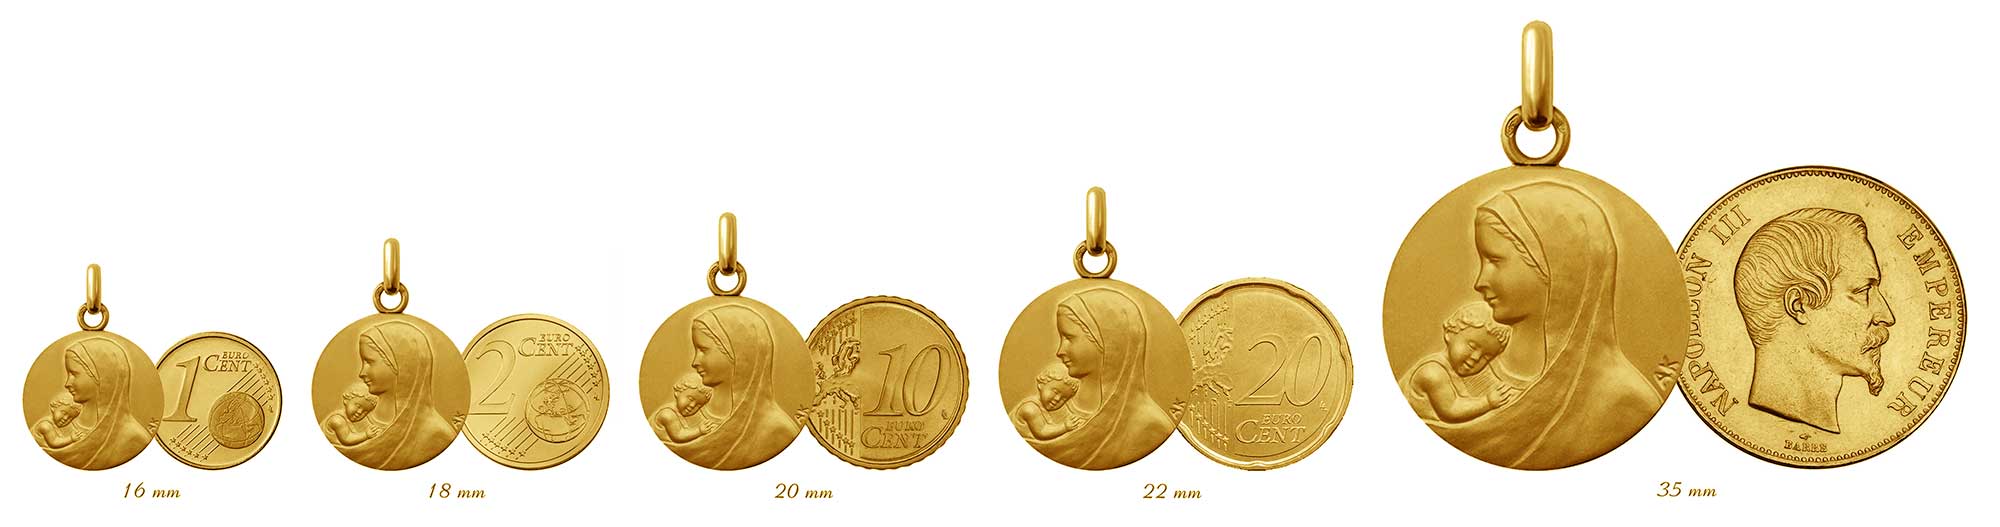 Médaille enfant or jaune 9 carats 14mm